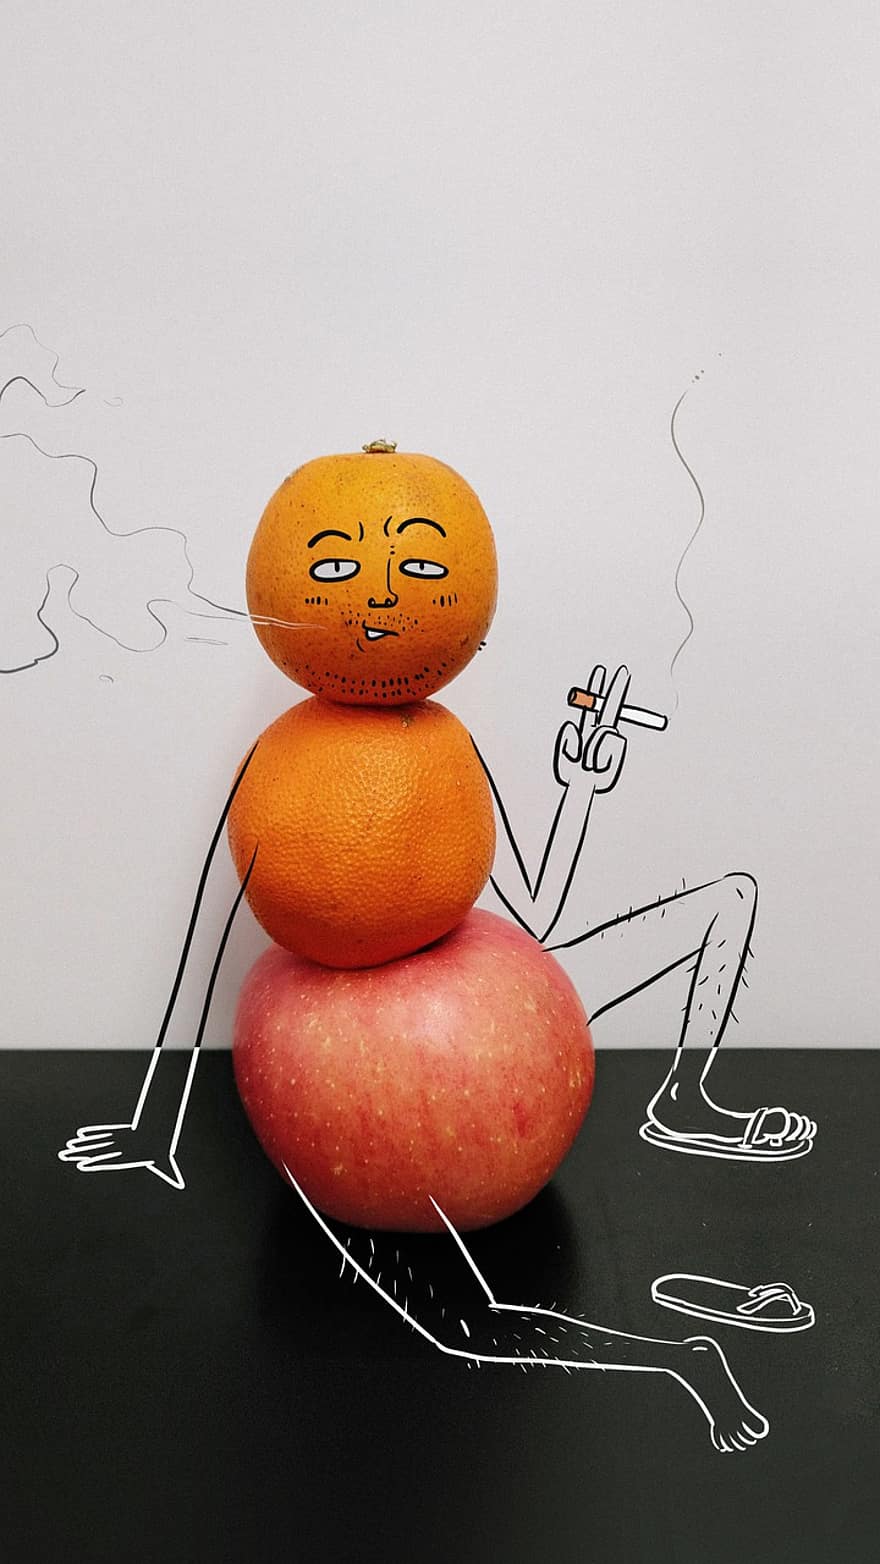 จิตรกรรม, ความคิดสร้างสรรค์, ผลไม้, แอปเปิ้ล, ส้ม, เสื่อม, ที่สูบบุหรี่, ยุคกลาง